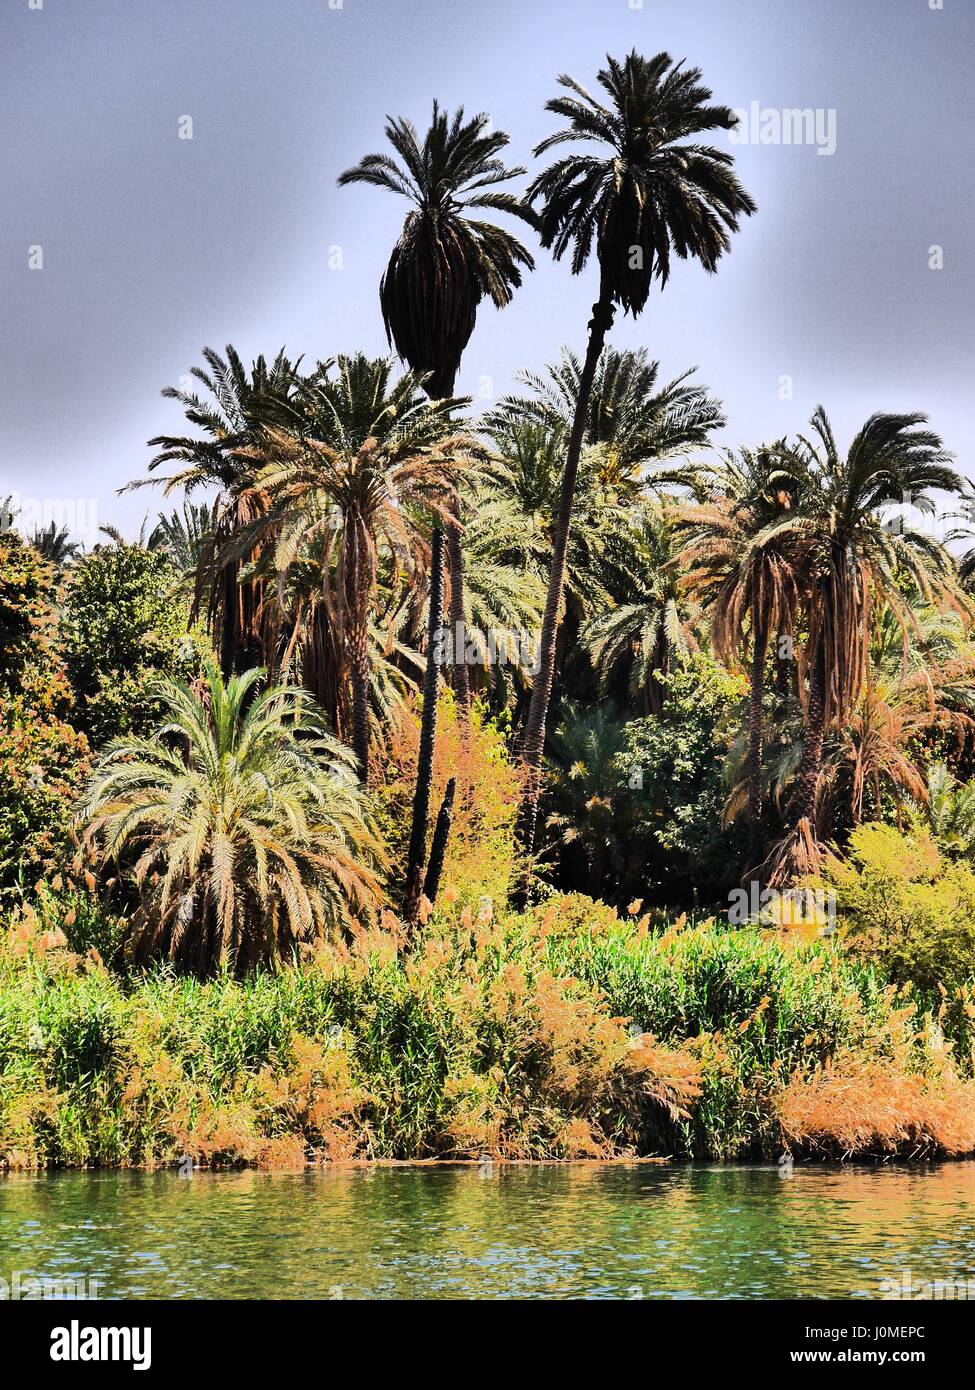 Tourné à haut contraste de végétation luxuriante et de grands palmiers se balançant sur les rives fertiles du Nil, l'Egypte Banque D'Images